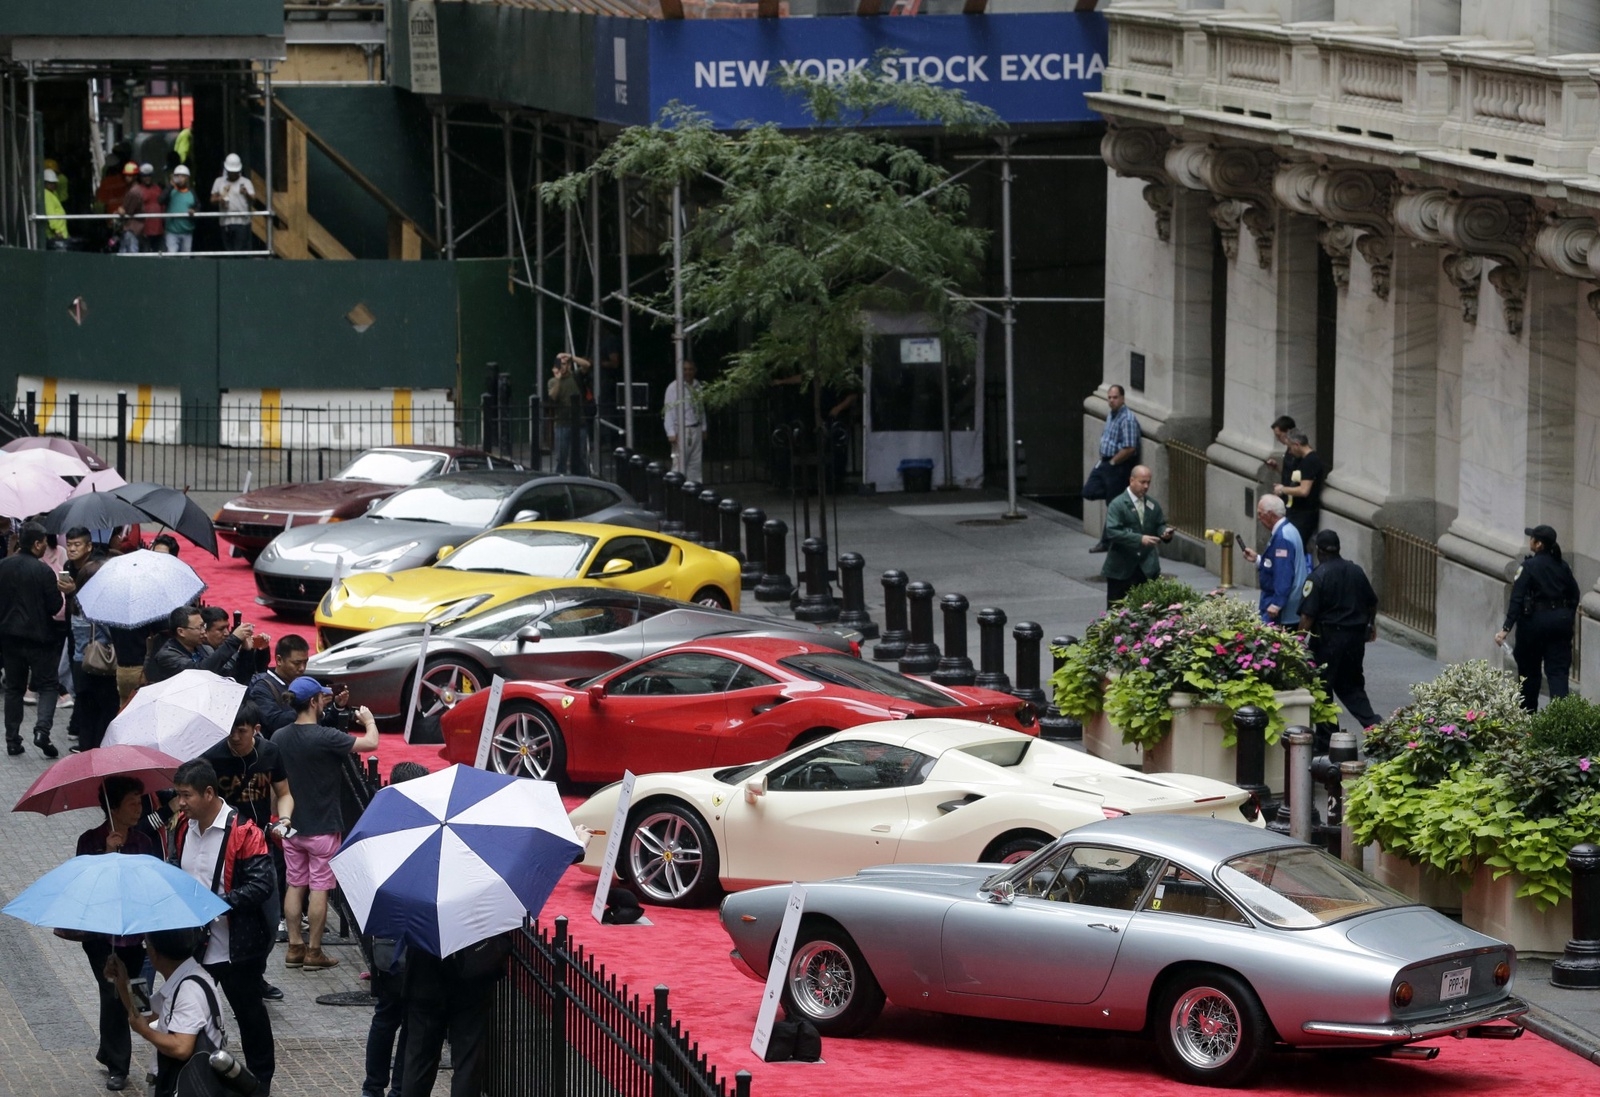 När Ferrari firade sitt 70-årsjubileum i oktober i år radade man upp några av sina modeller framför New York-börsen.
Foto: Seth Wenig/AP/TT